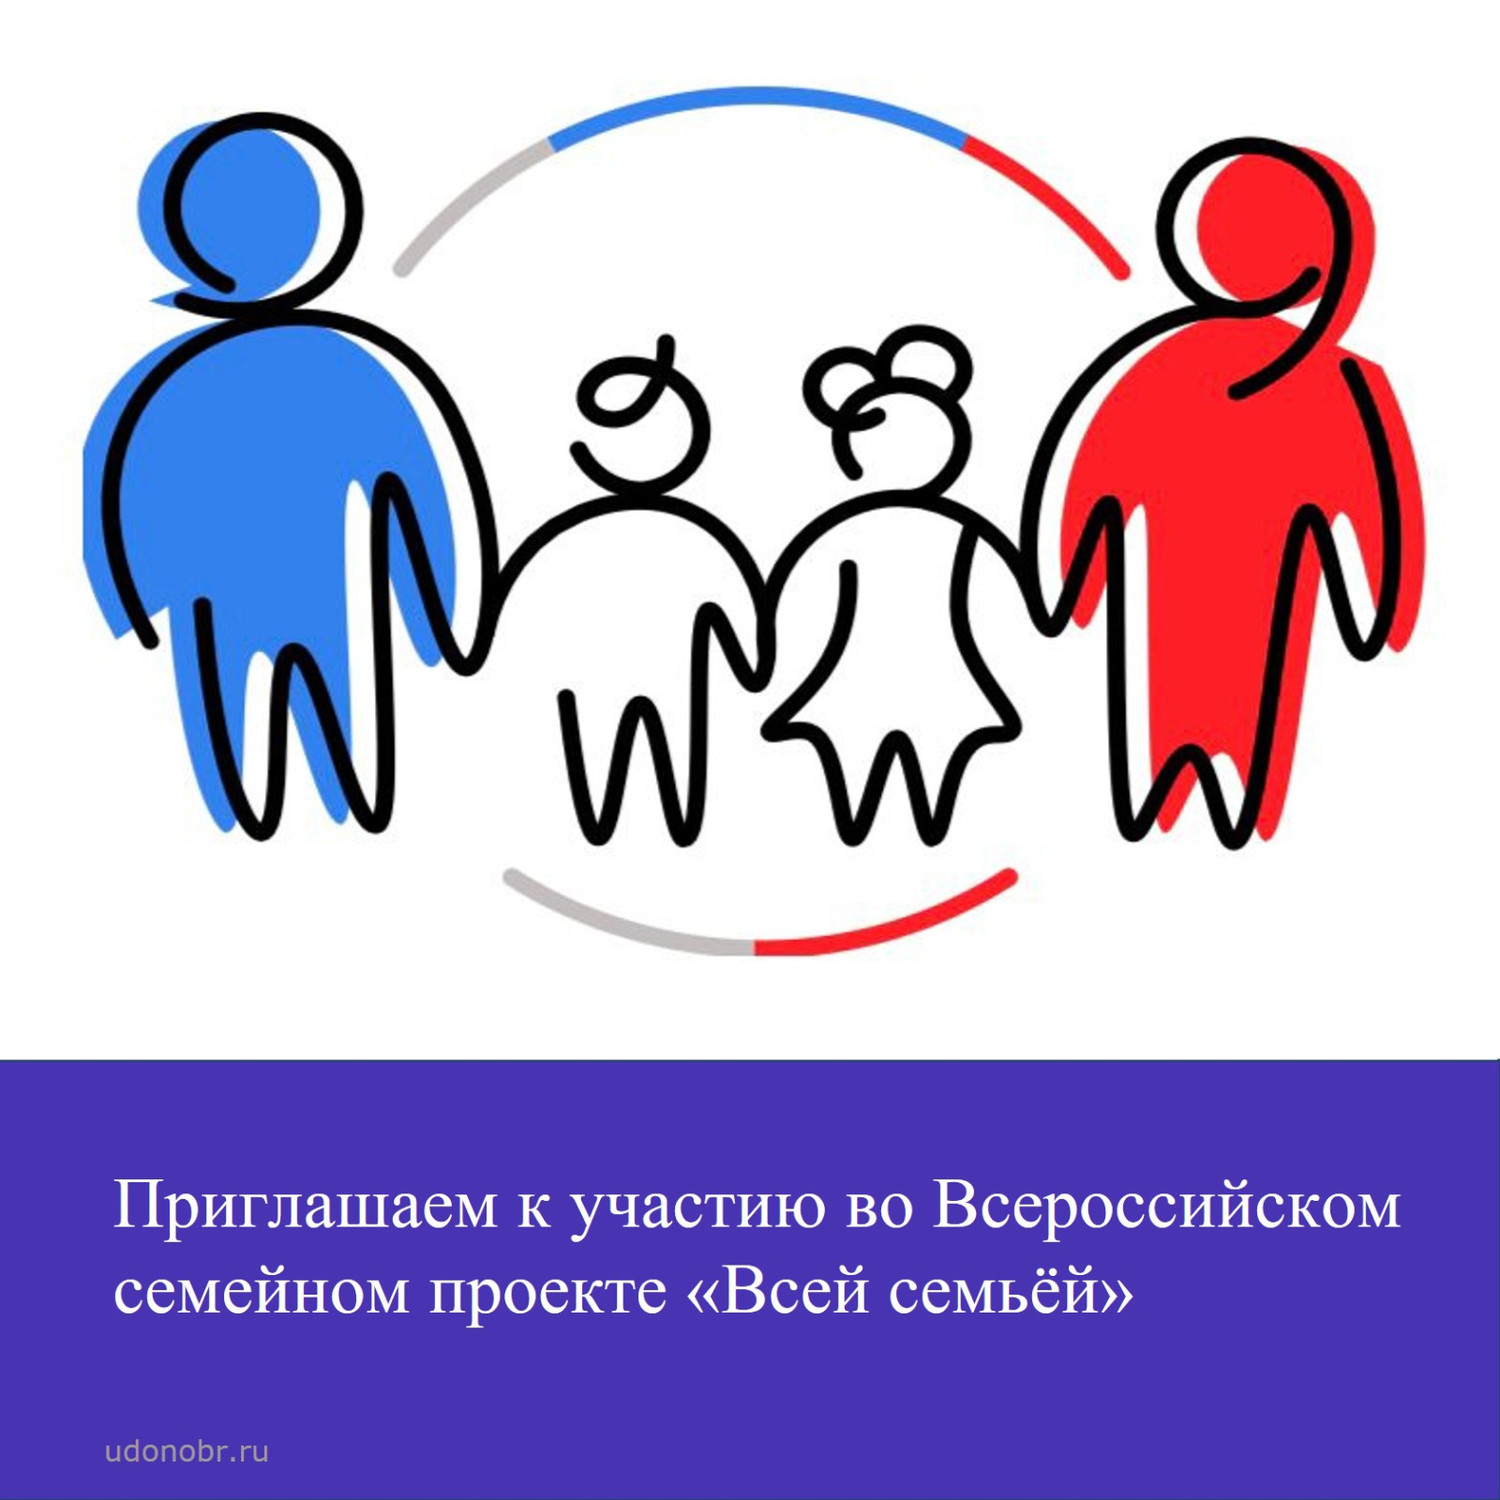 Приглашаем к участию во Всероссийском семейном проекте «Всей семьей»